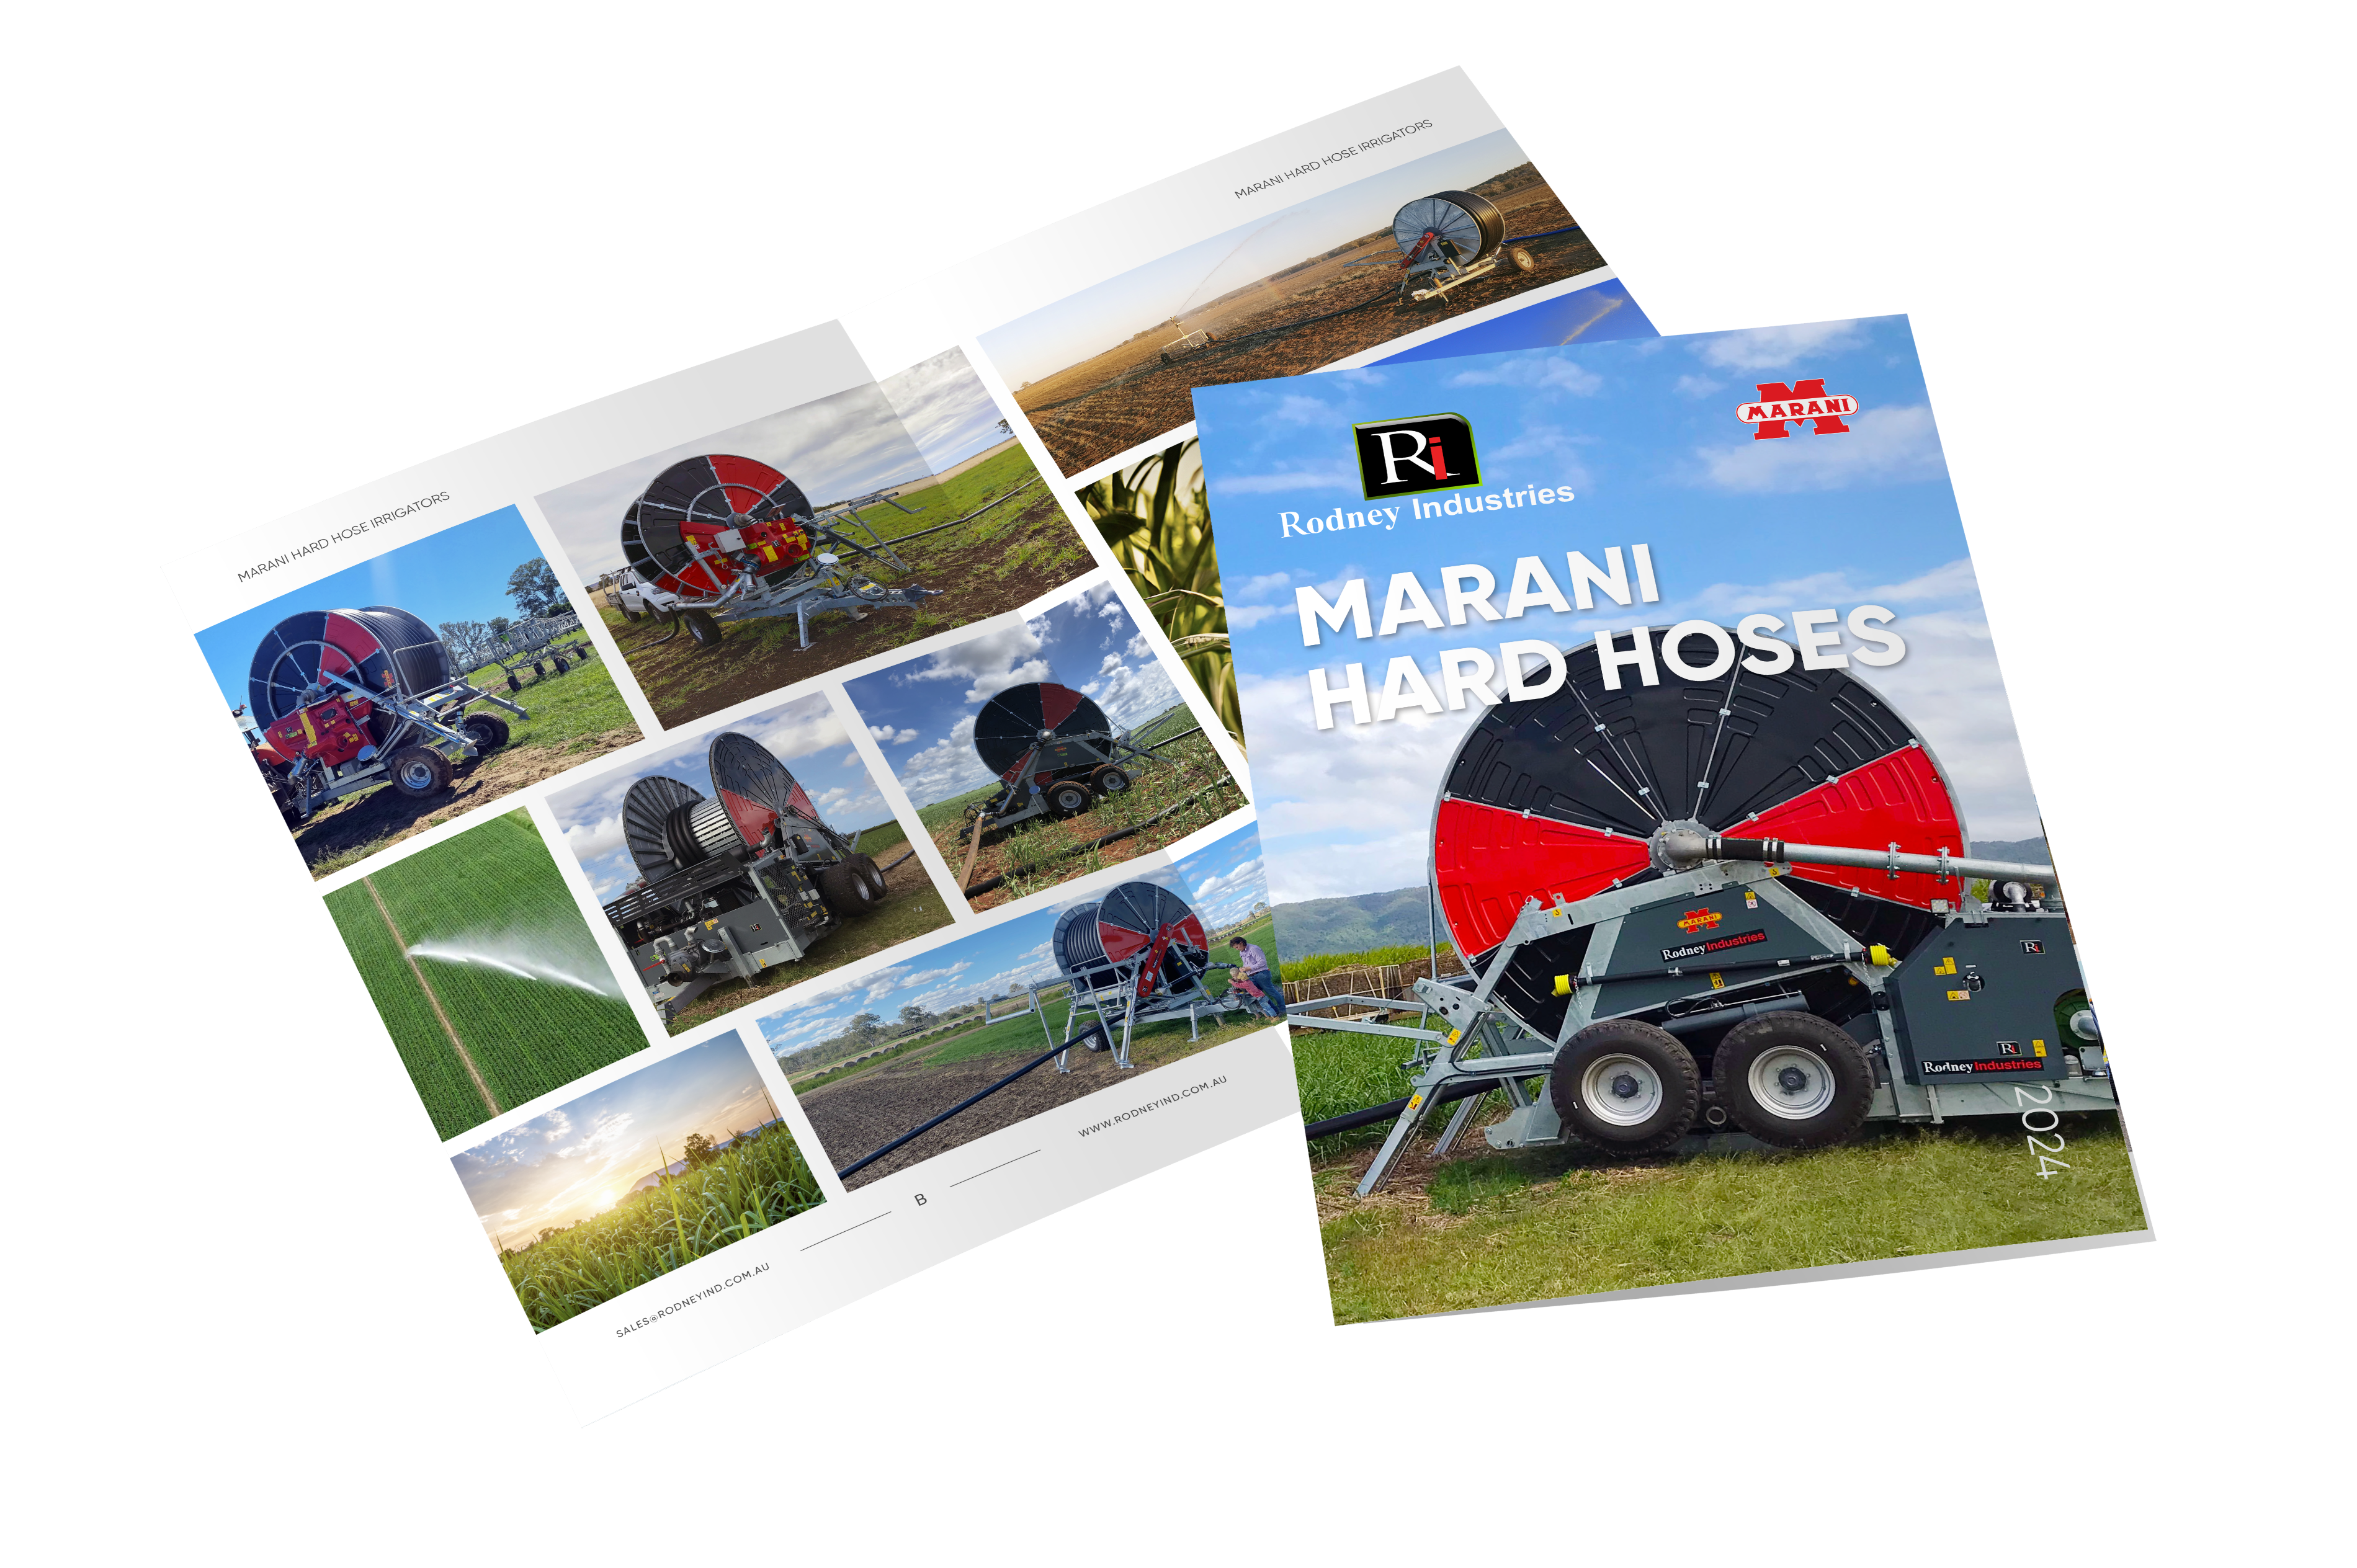 Marani Hard Hose Irrigators